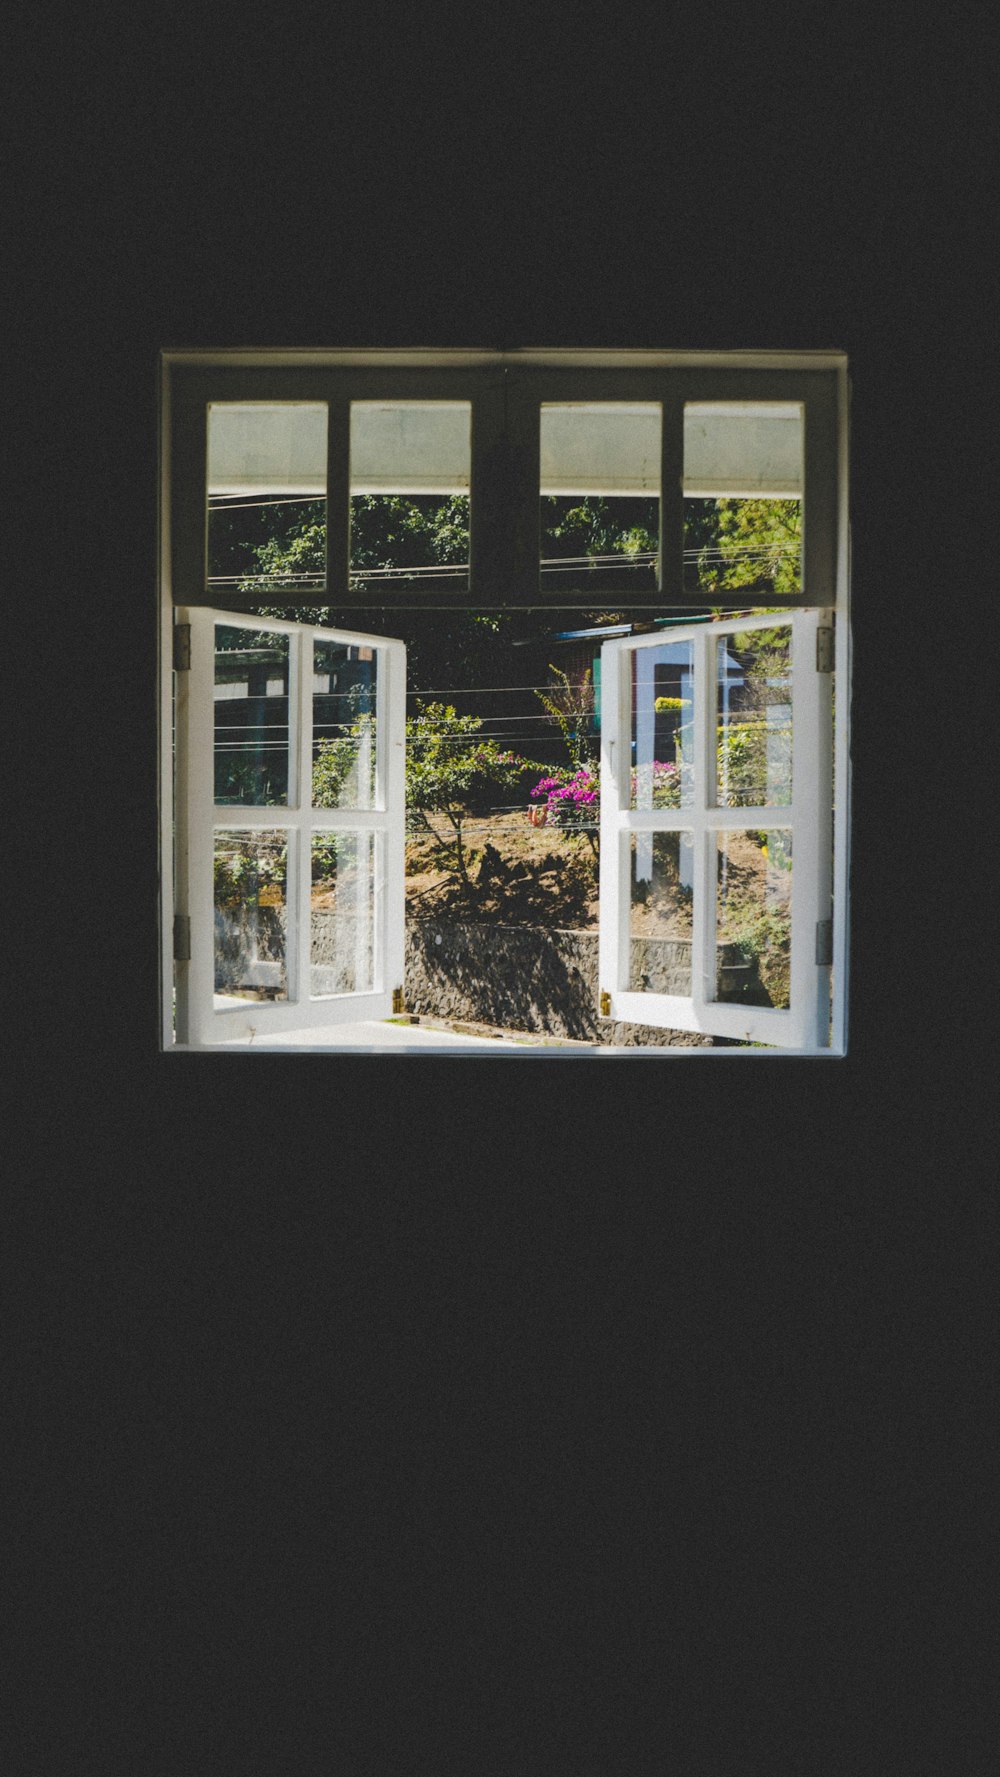 an open window in a dark room